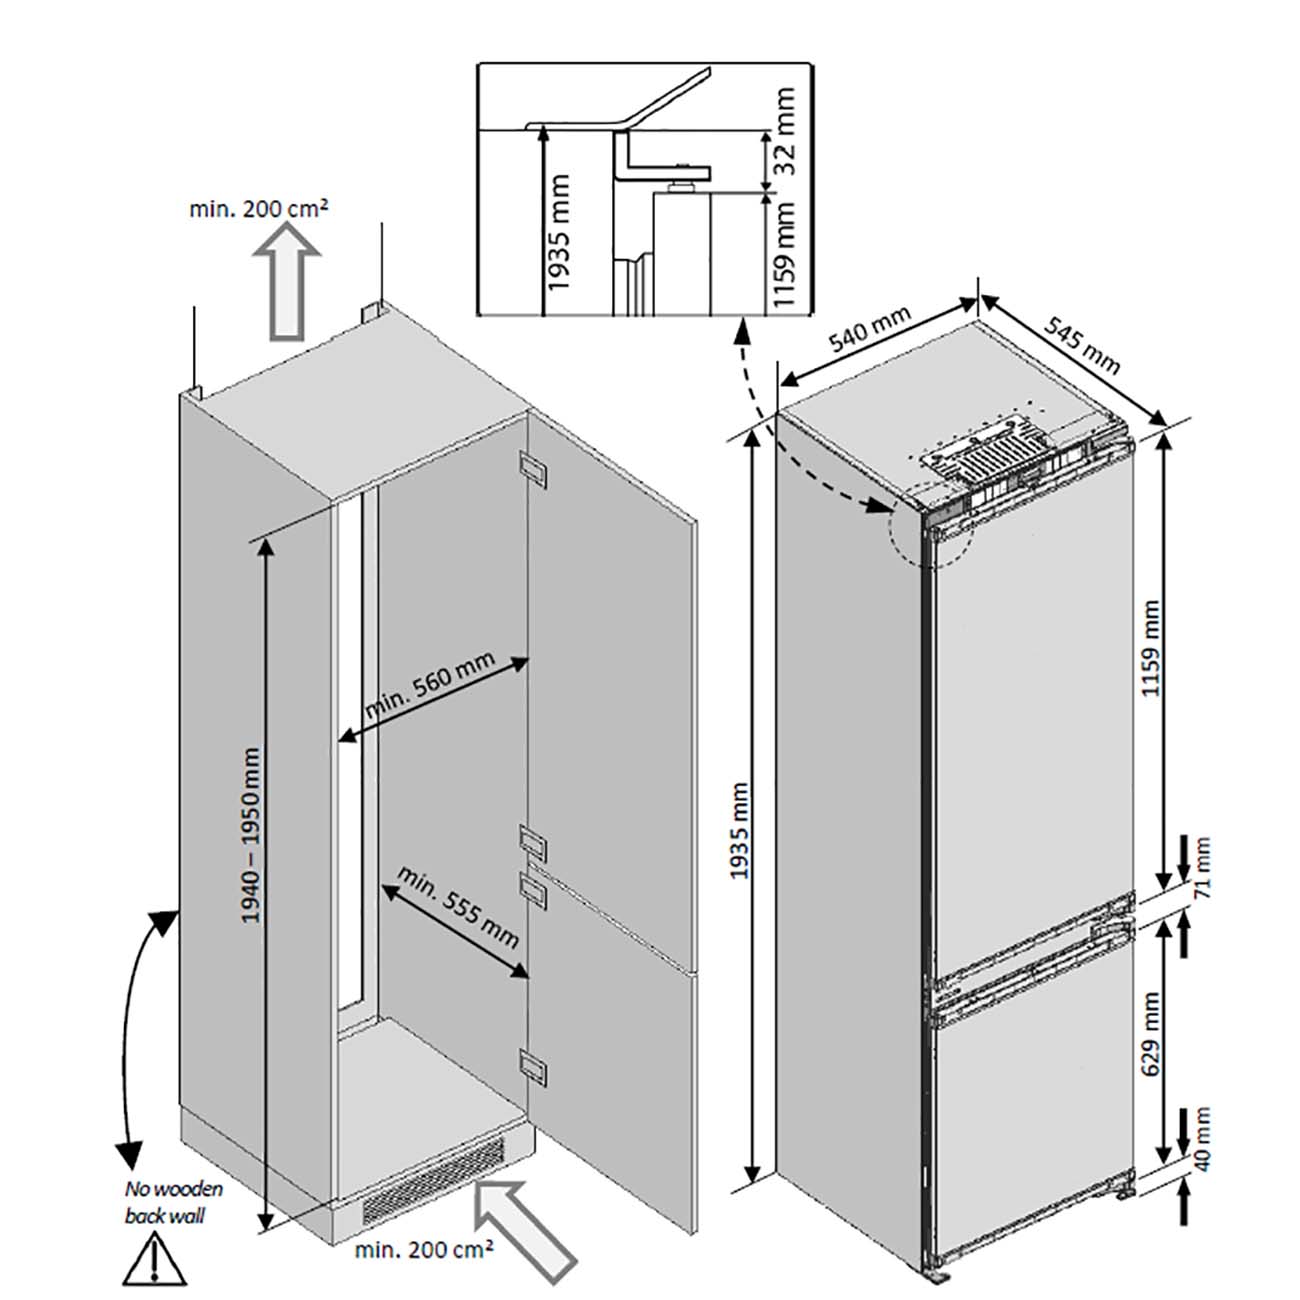 Grundig gkin25920 холодильник схема встраивания